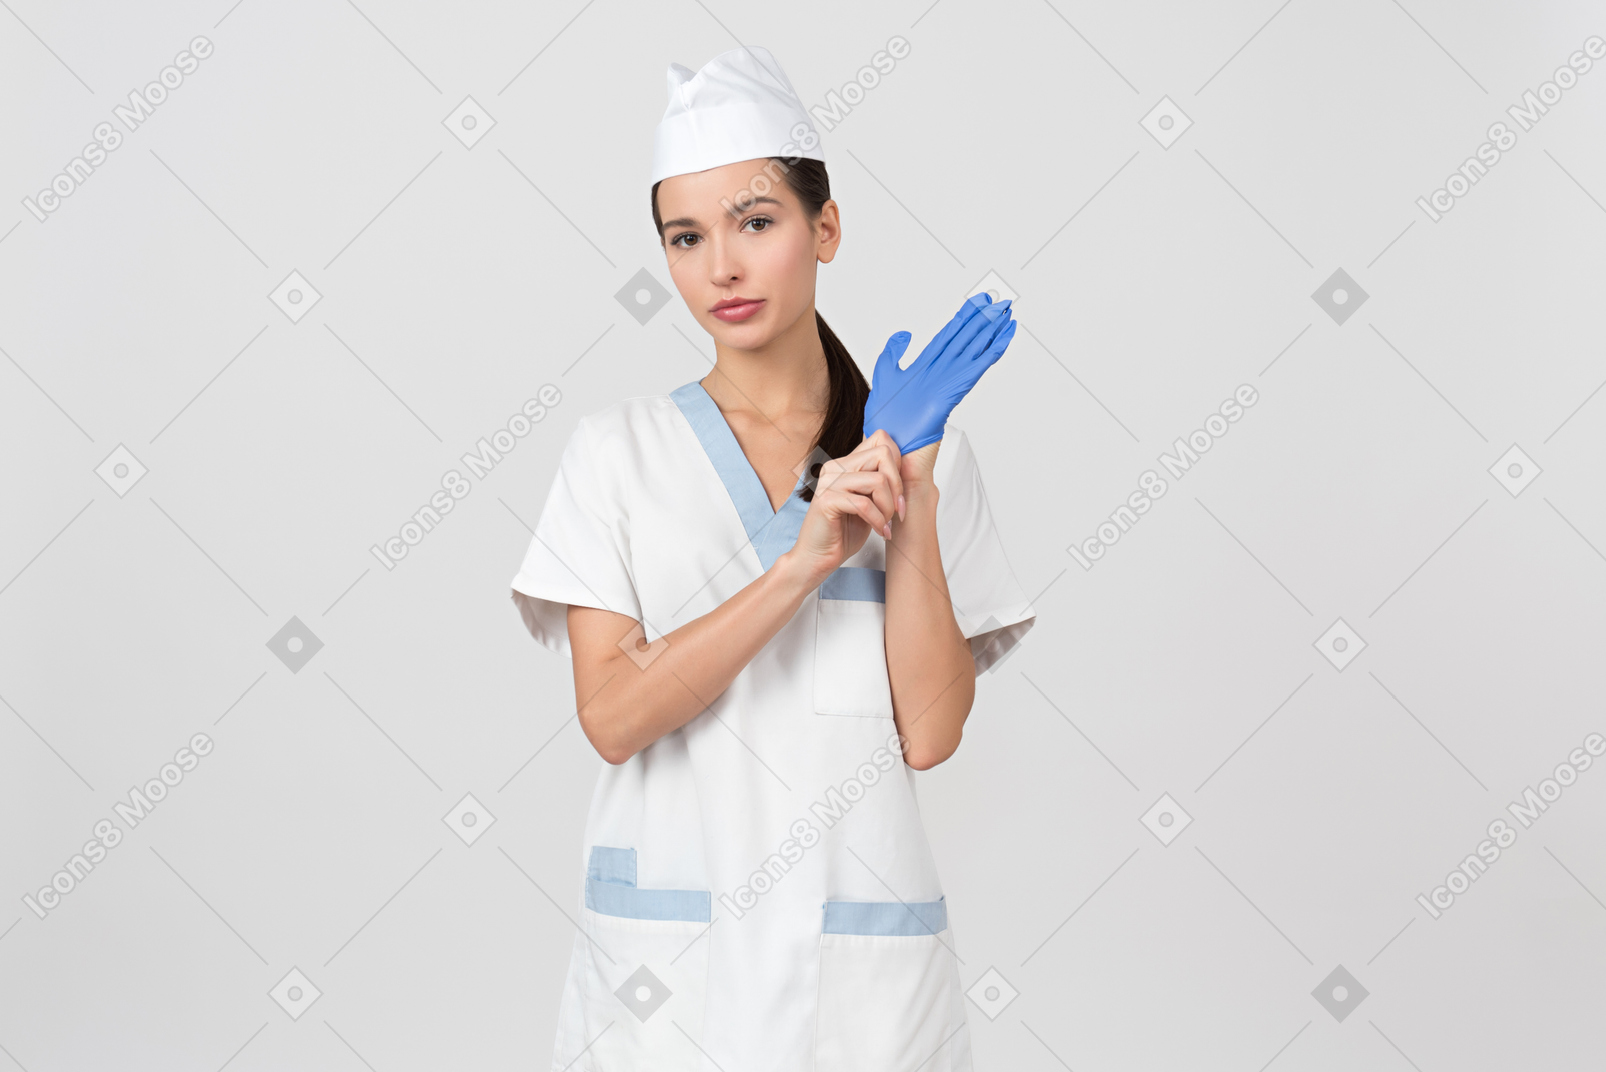 라텍스 장갑을 입고 의료 가운에 매력적인 간호사